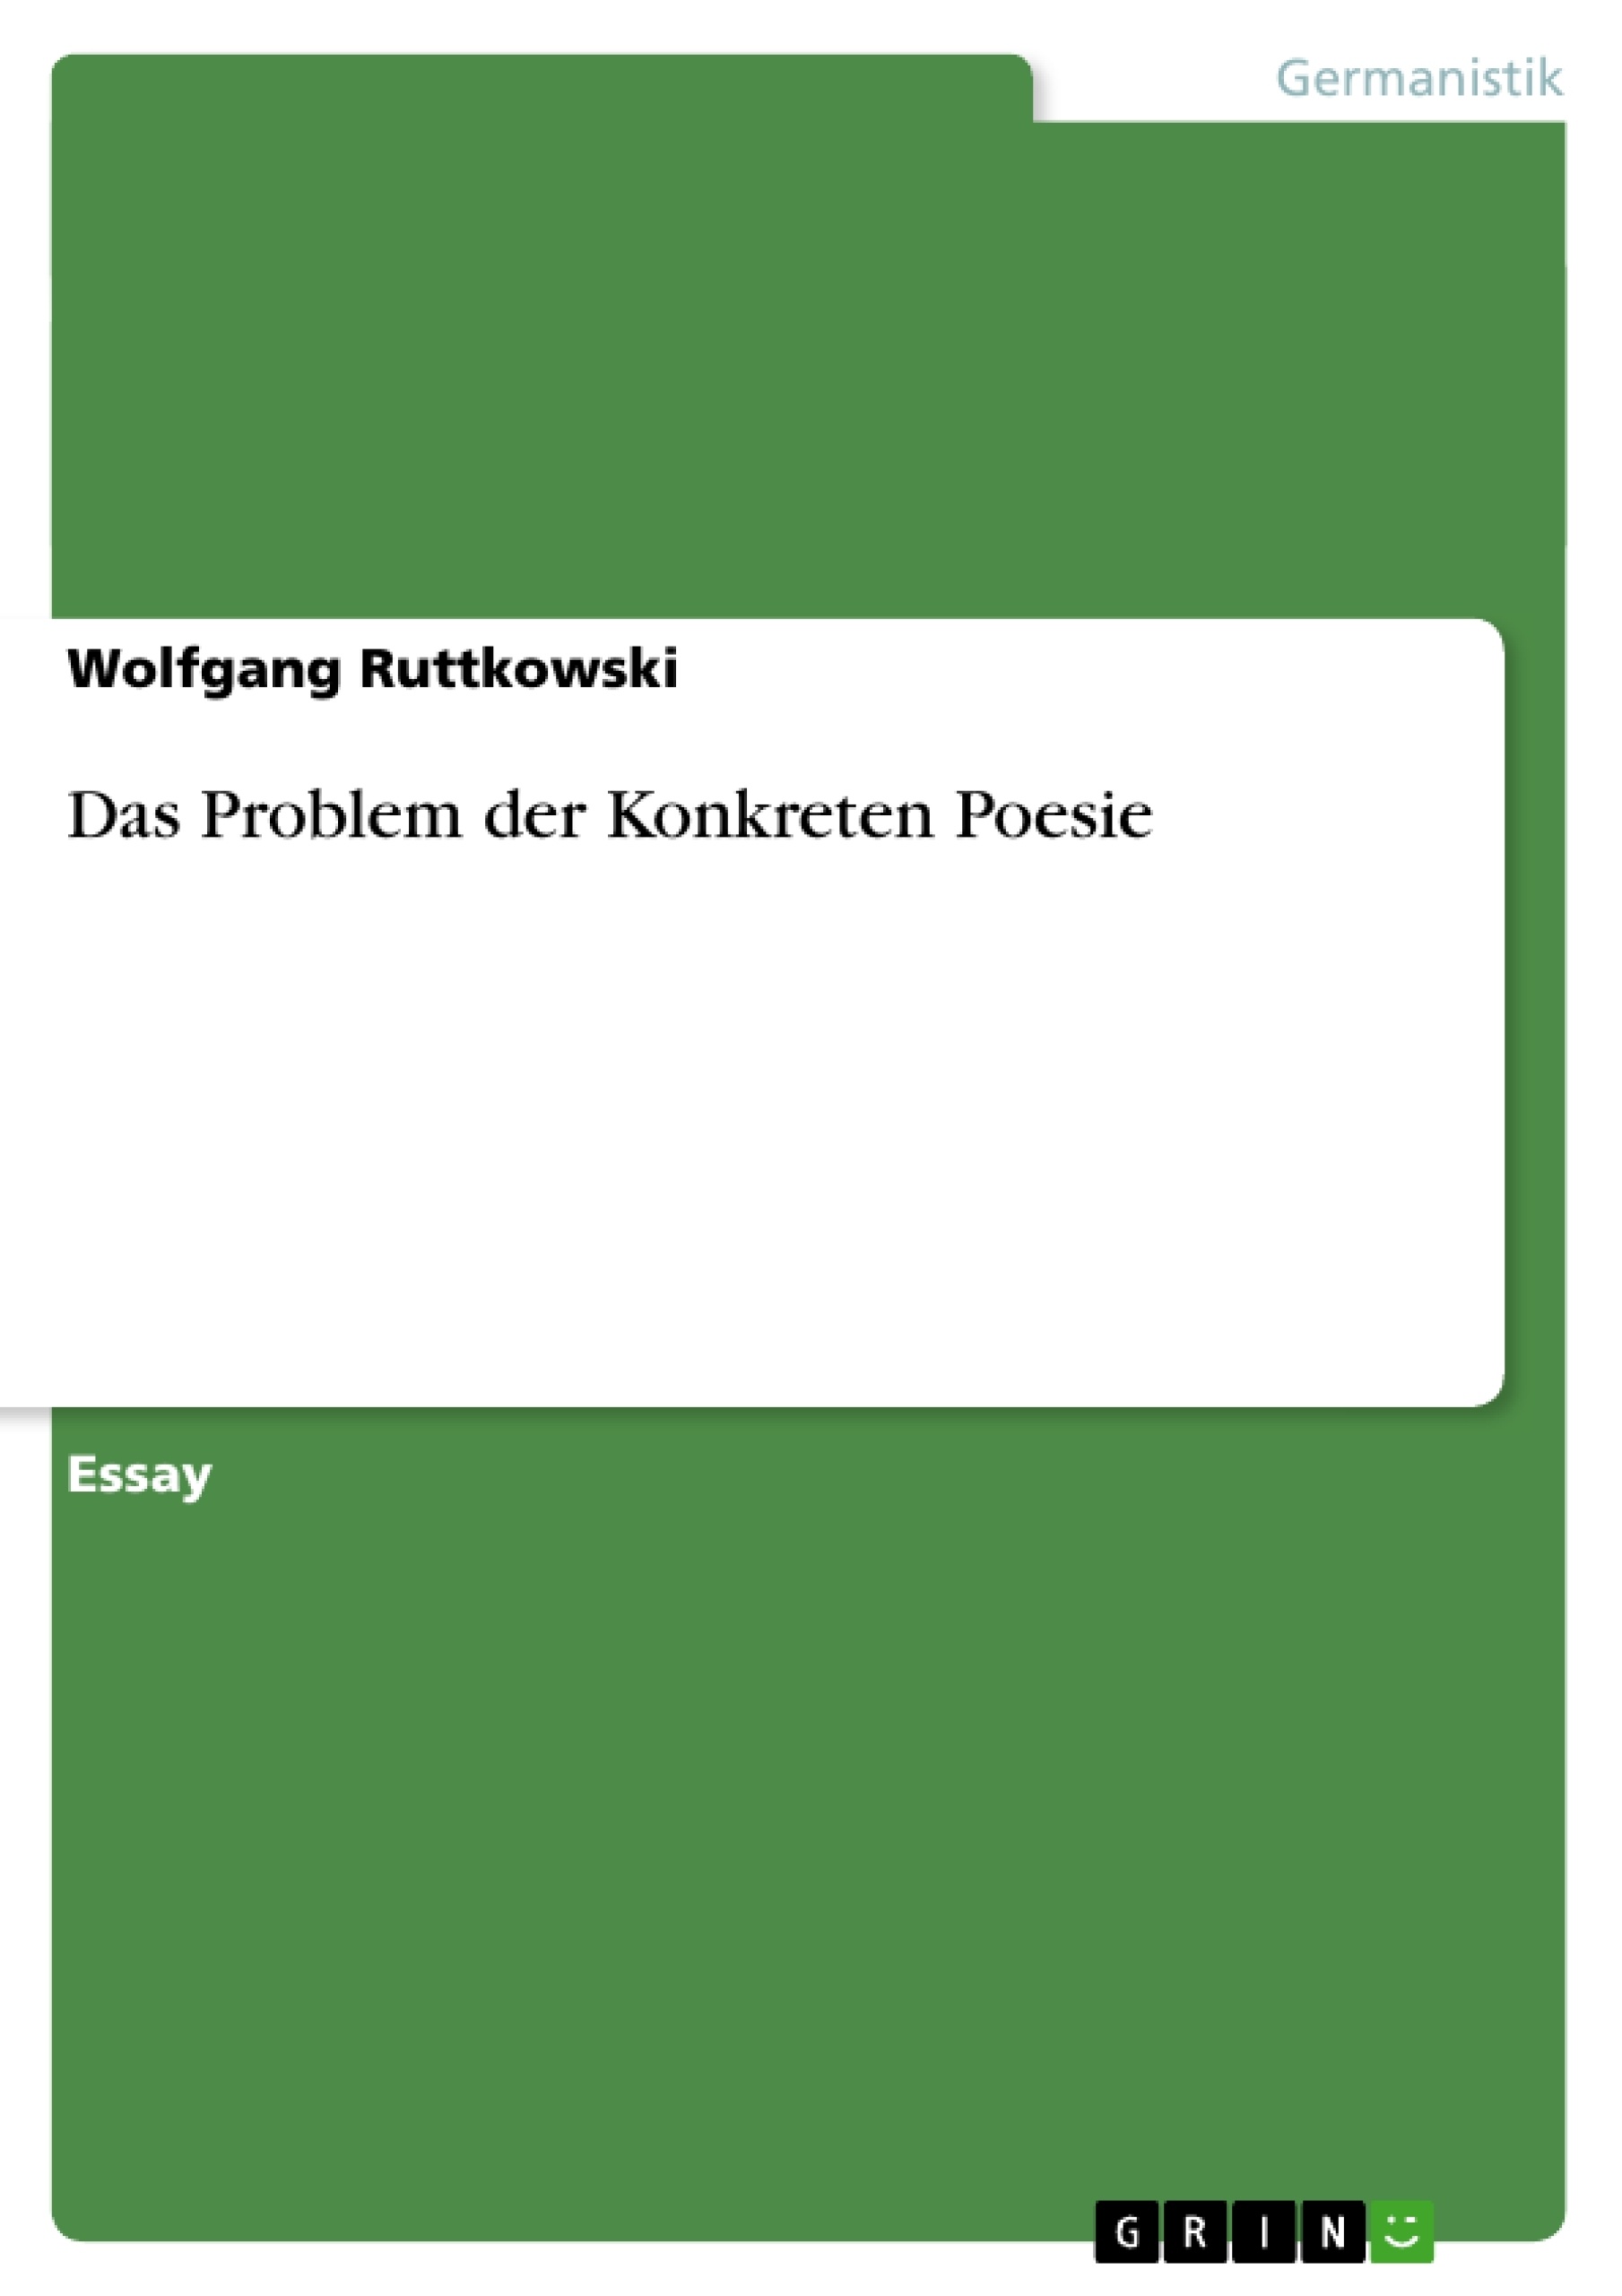 Title: Das Problem der Konkreten Poesie